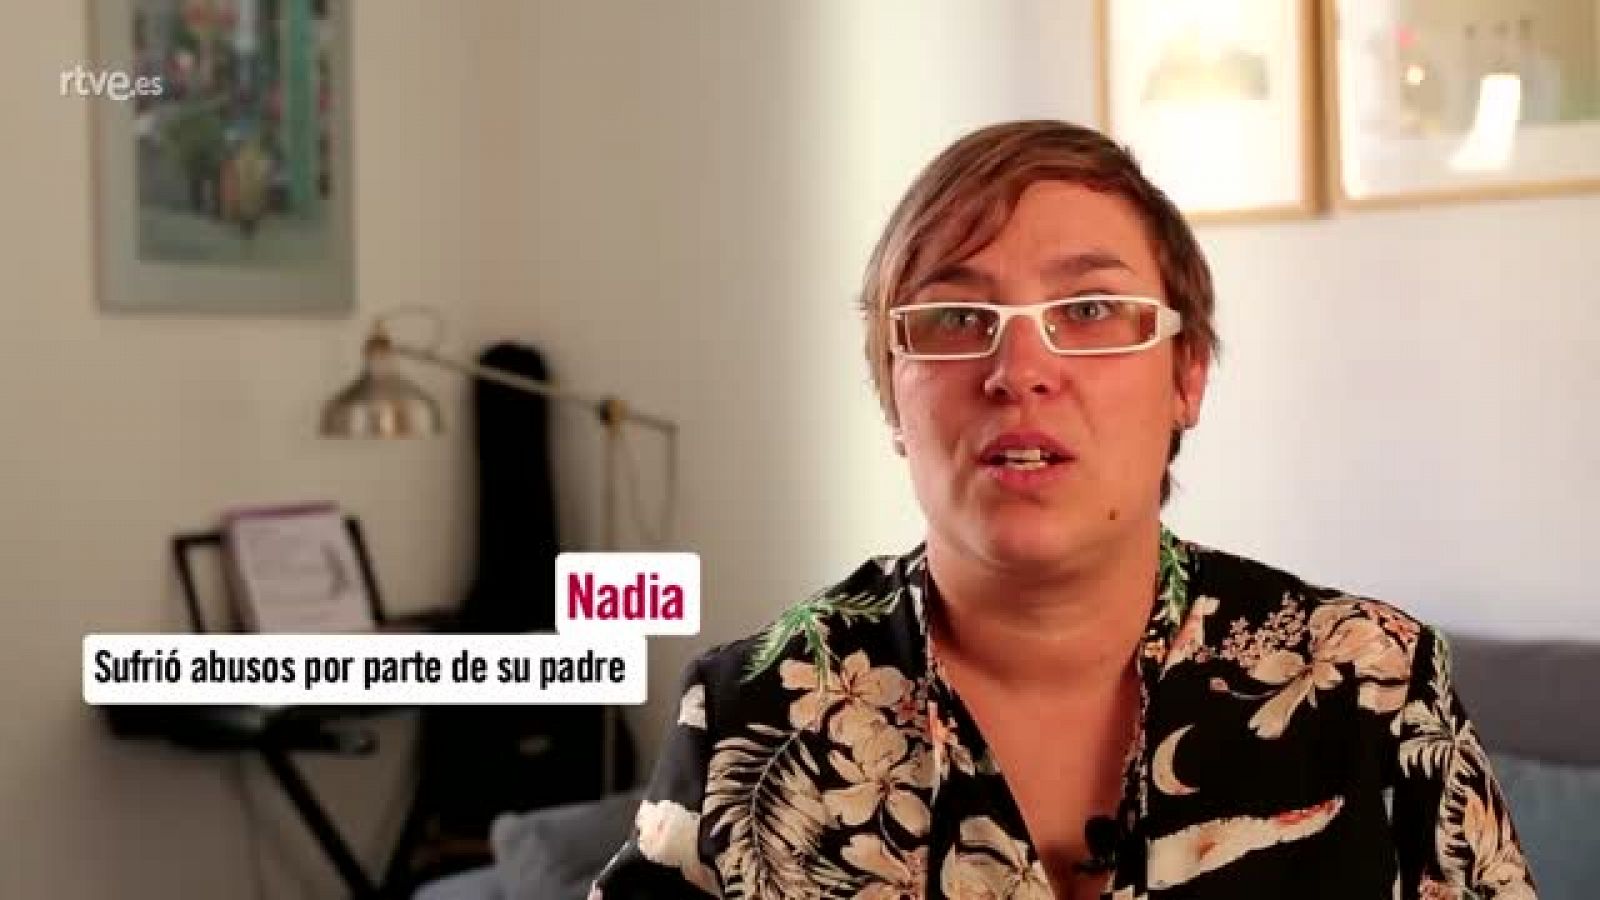 Save the Children - Nadia rompe el silencio y cuenta el abuso sexual que sufrió siendo niña